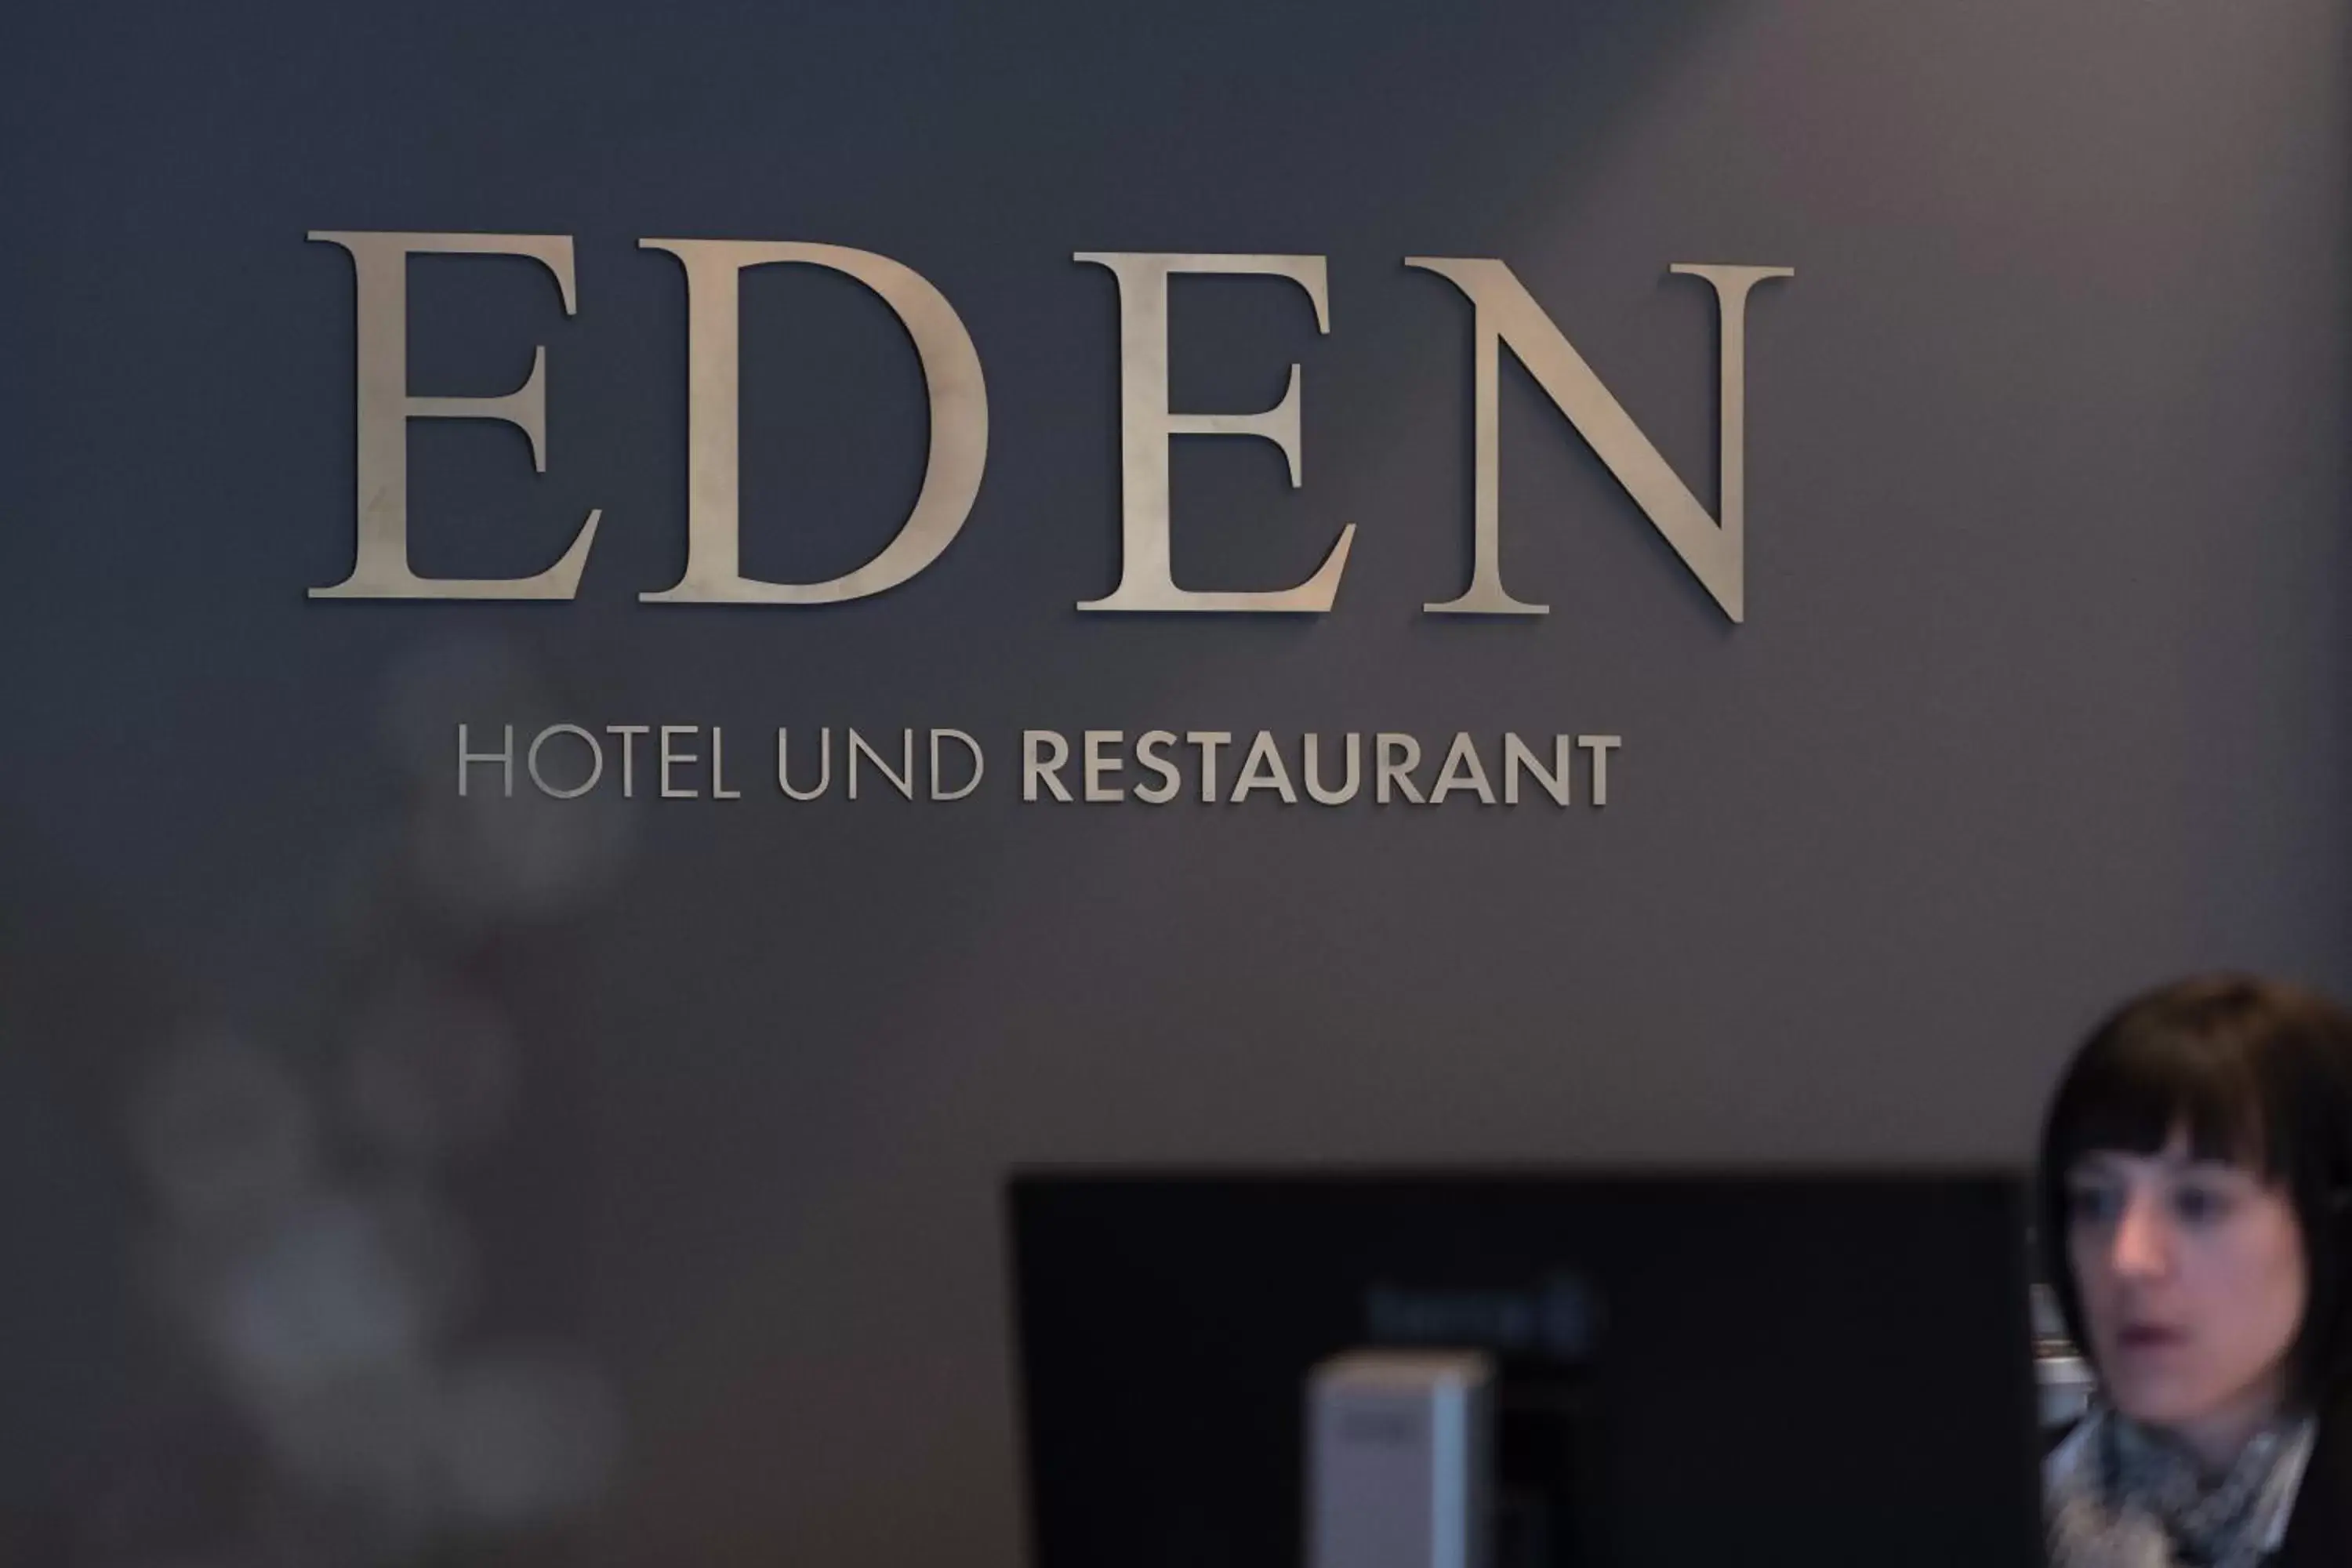 Property logo or sign in Eden Hotel und Restaurant